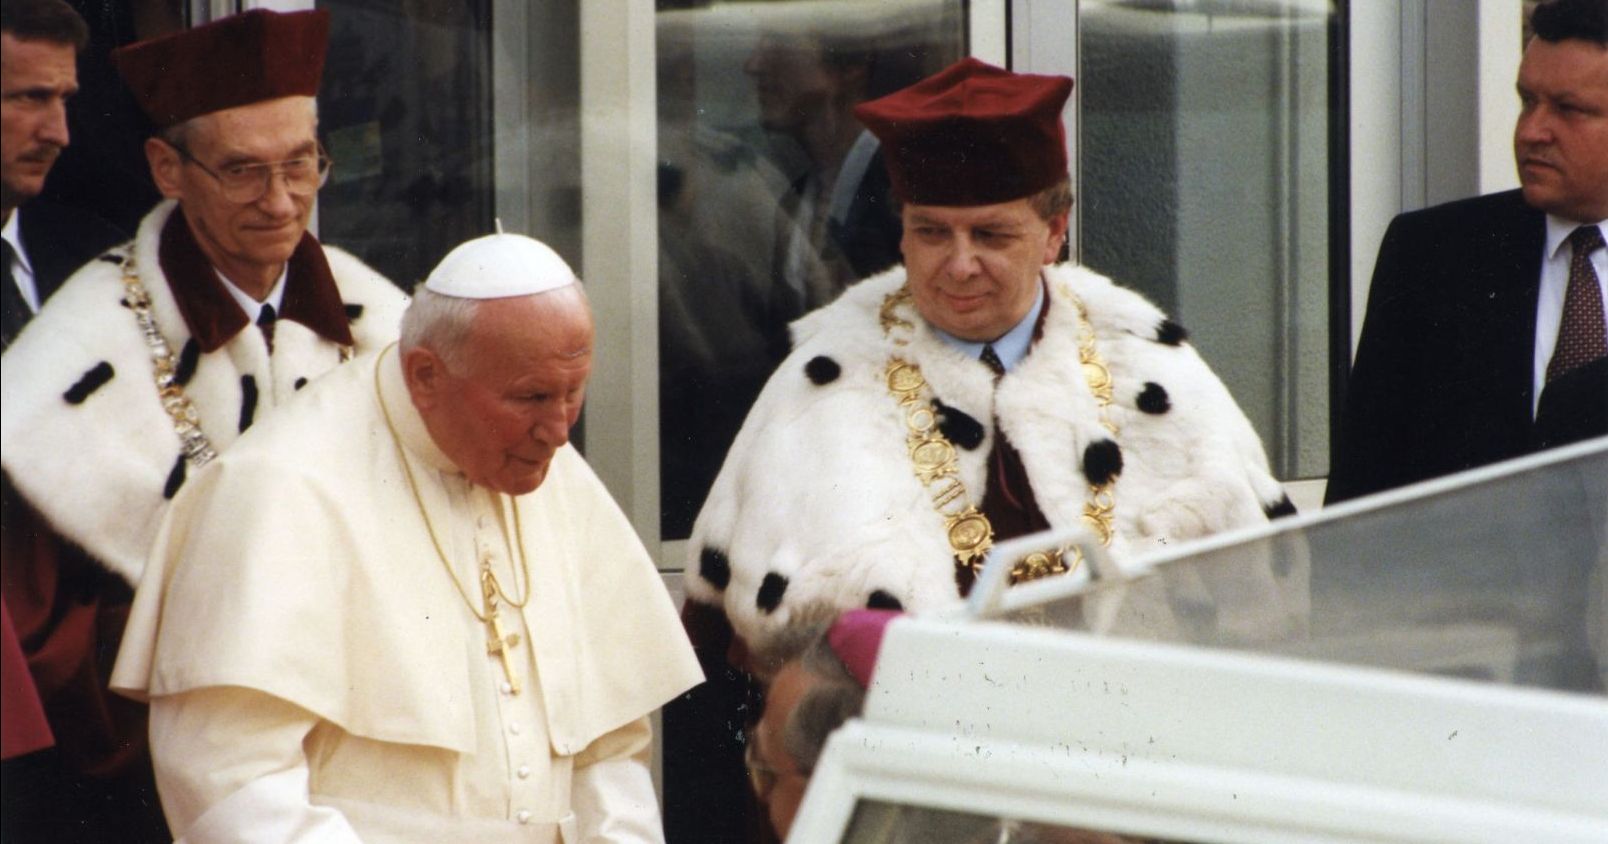 25 lat temu w auli UMK papież Jan Paweł II spotkał się z przedstawicielami nauki i rektorami uczelni wyższych w Polsce Papież Jan Paweł II stoi z władzami rektorskimi